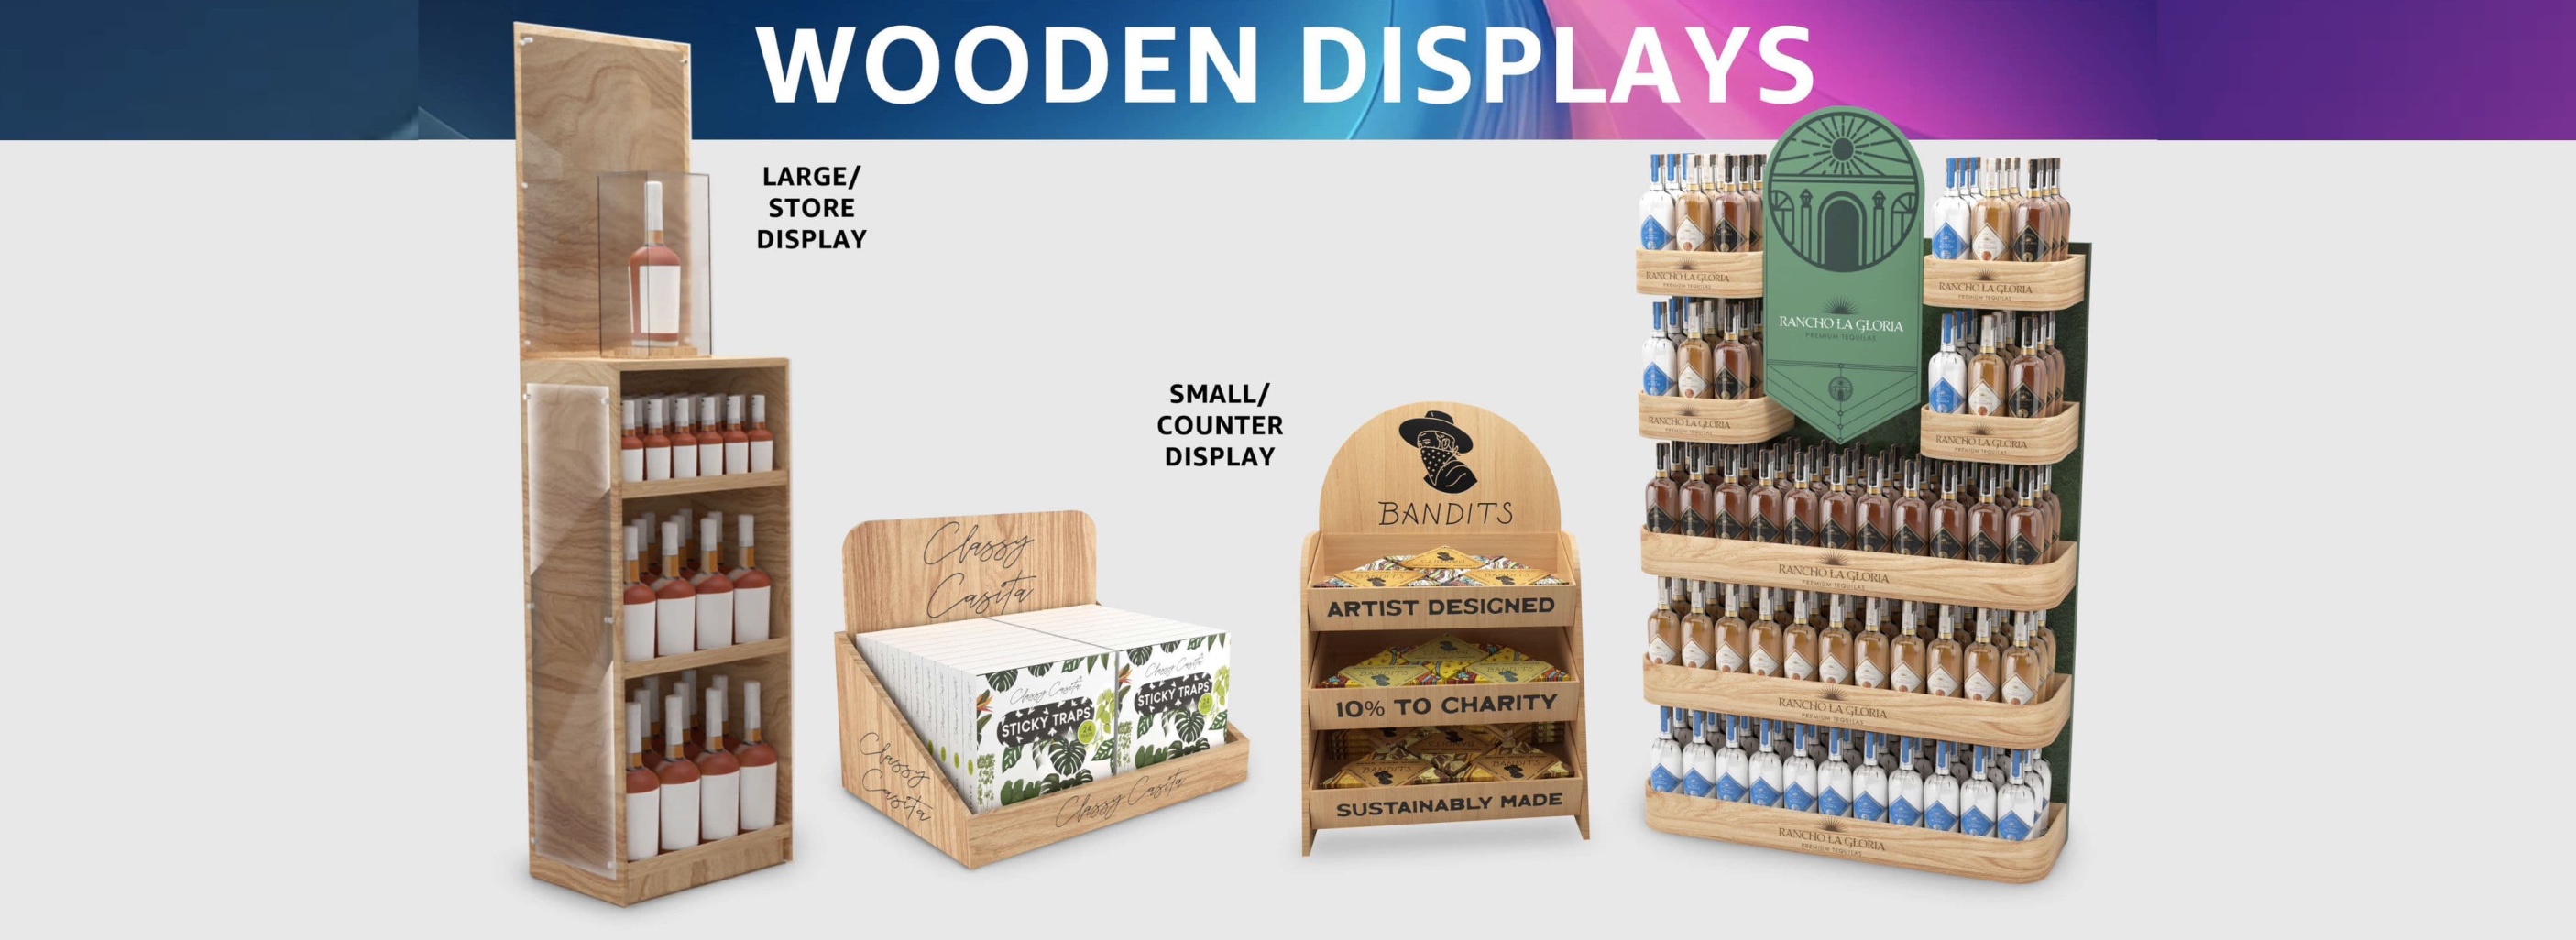 Wooden Displays